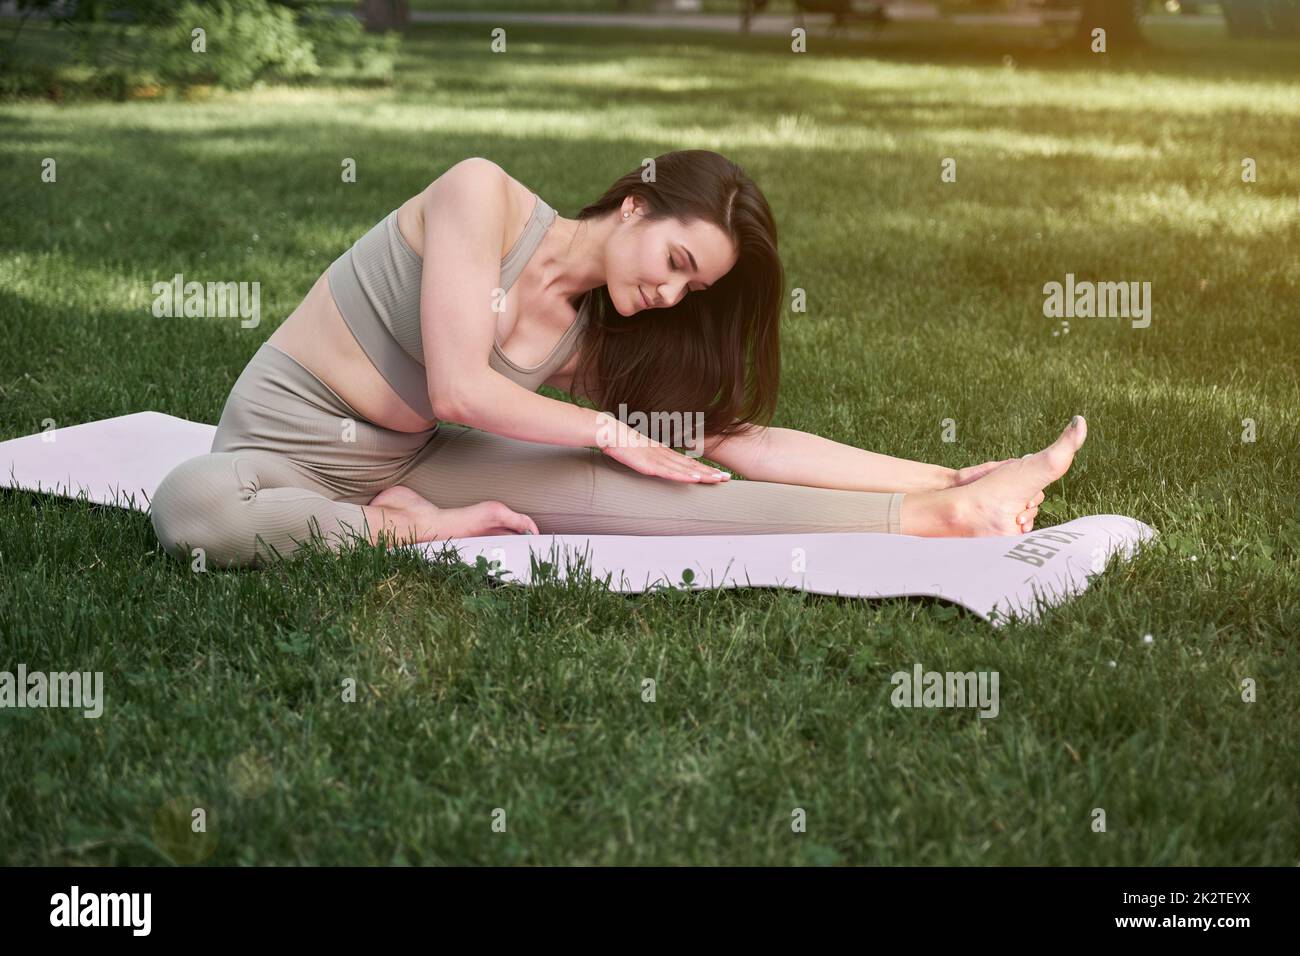 Une jeune femme pratique le yoga dans un parc municipal par une chaude journée d'été. Une jeune fille de sport est assise sur un tapis de gymnastique. Banque D'Images